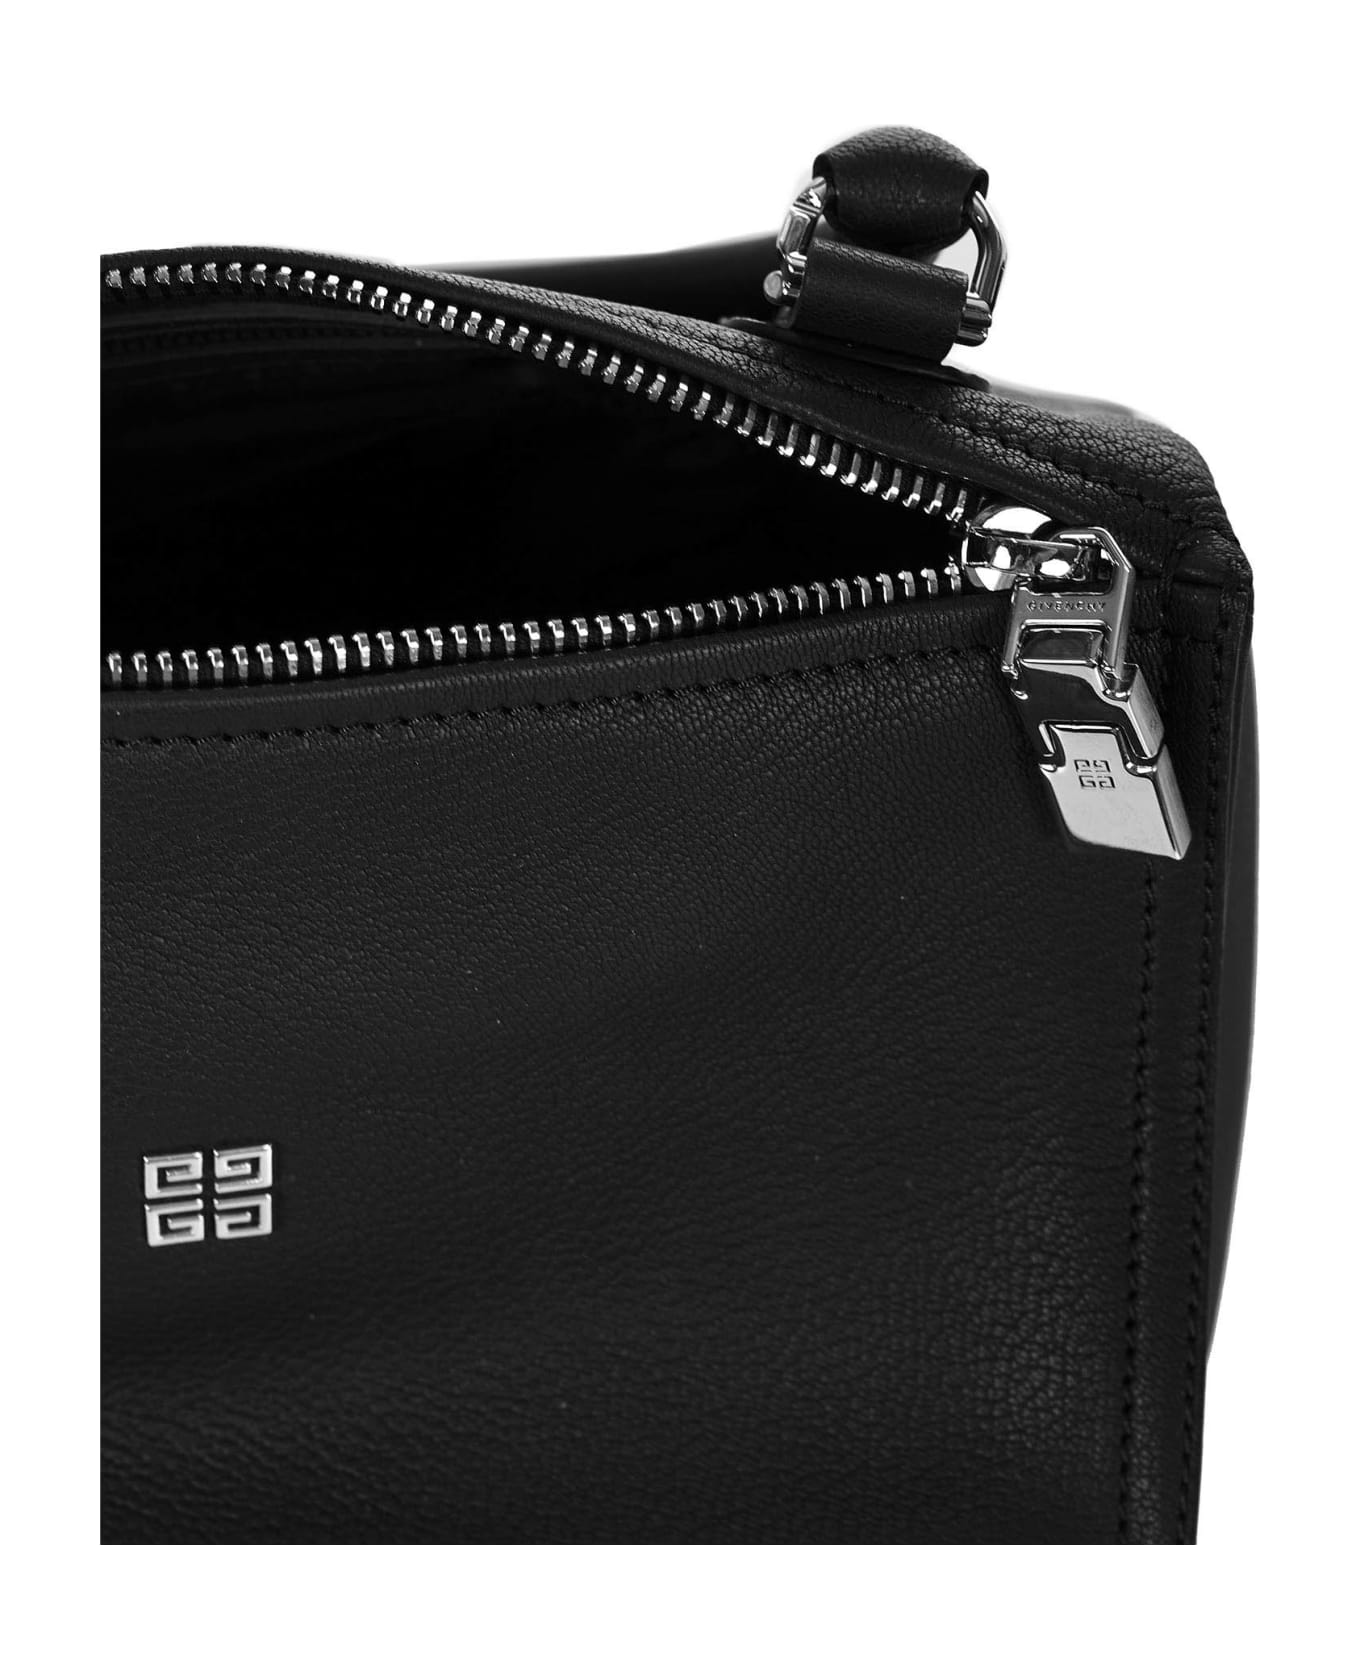 Givenchy Pandora Small Shoulder Bag - Black